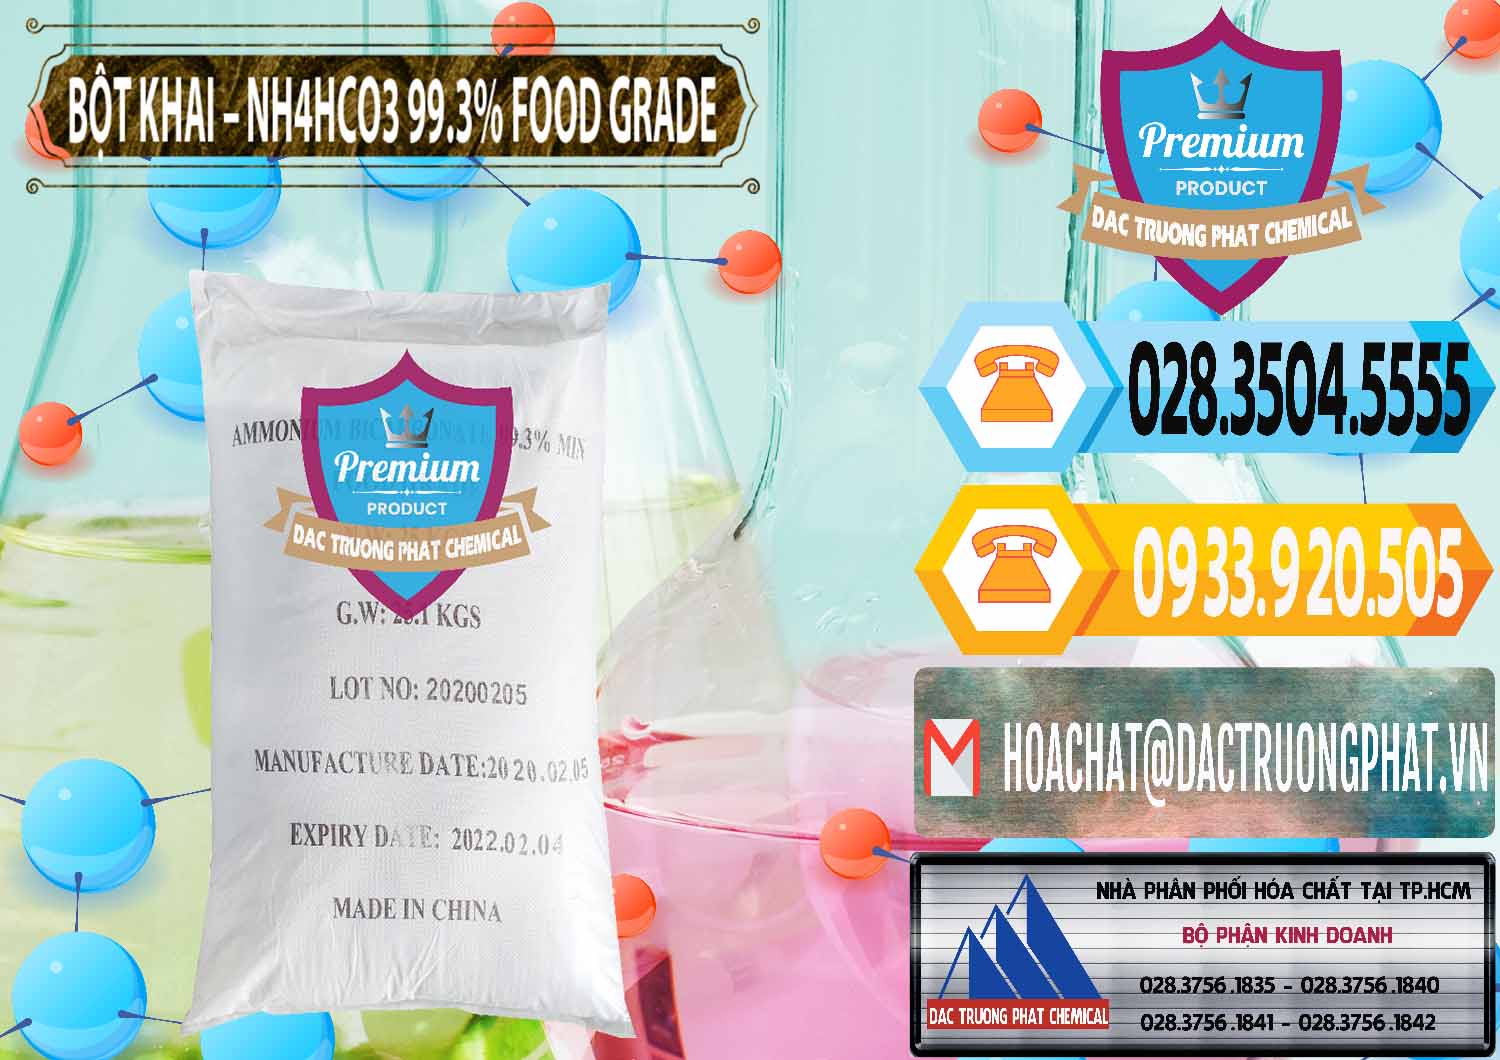 Cty cung ứng ( bán ) Ammonium Bicarbonate – Bột Khai NH4HCO3 Food Grade Trung Quốc China - 0019 - Đơn vị kinh doanh - phân phối hóa chất tại TP.HCM - hoachattayrua.net